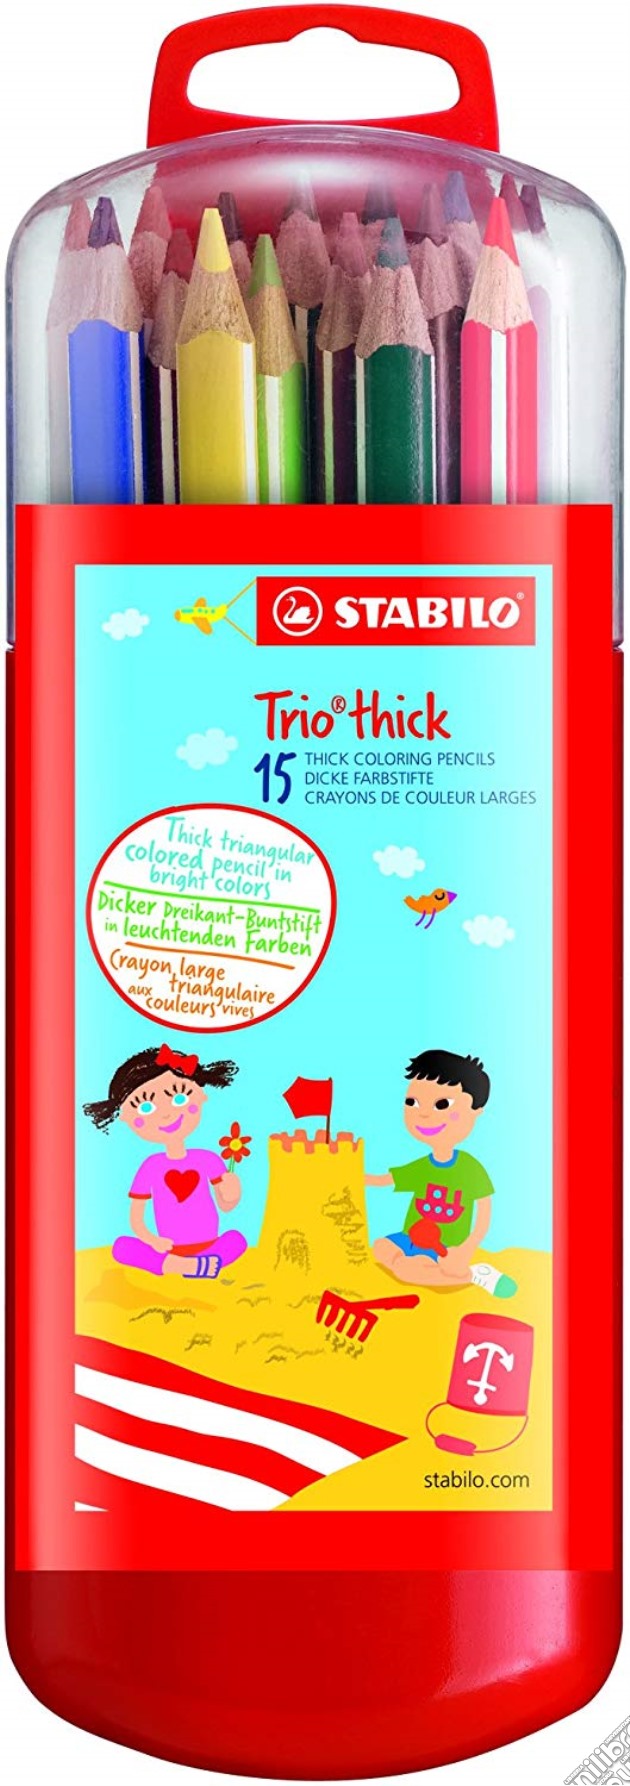 Stabilo: Trio Thick - Astuccio Zebrui In Plastica Da 15 Colori Assortiti gioco di Stabilo